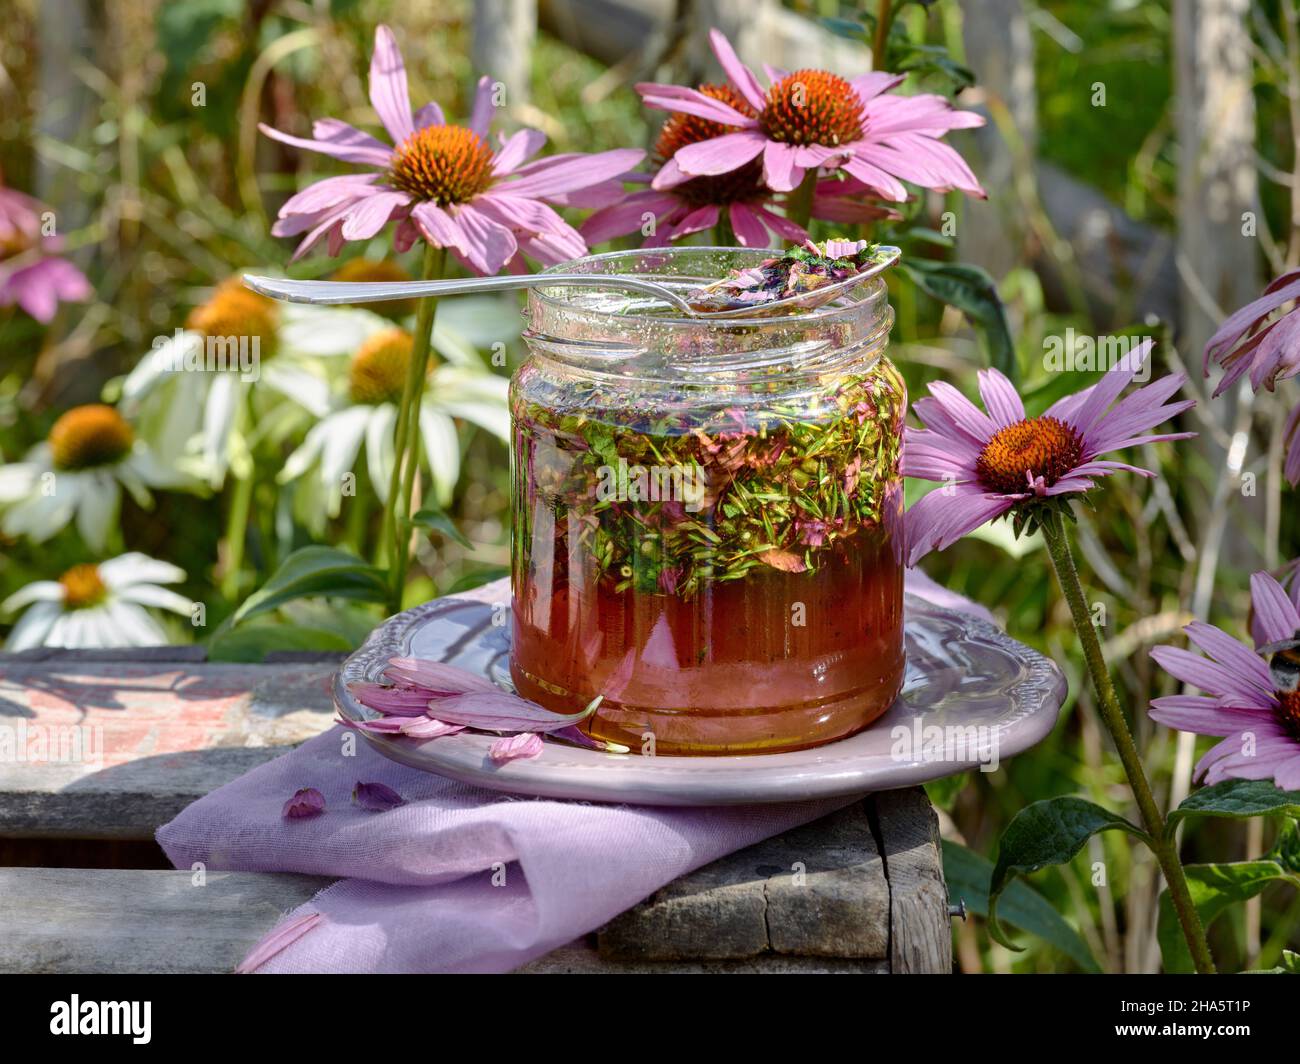 Honigglas gefüllt mit Honig und zerdrücktem Sonnenhut oder Echinacea mit einer irdenen Untertasse auf einer Holzkiste im sonnigen Garten Stockfoto